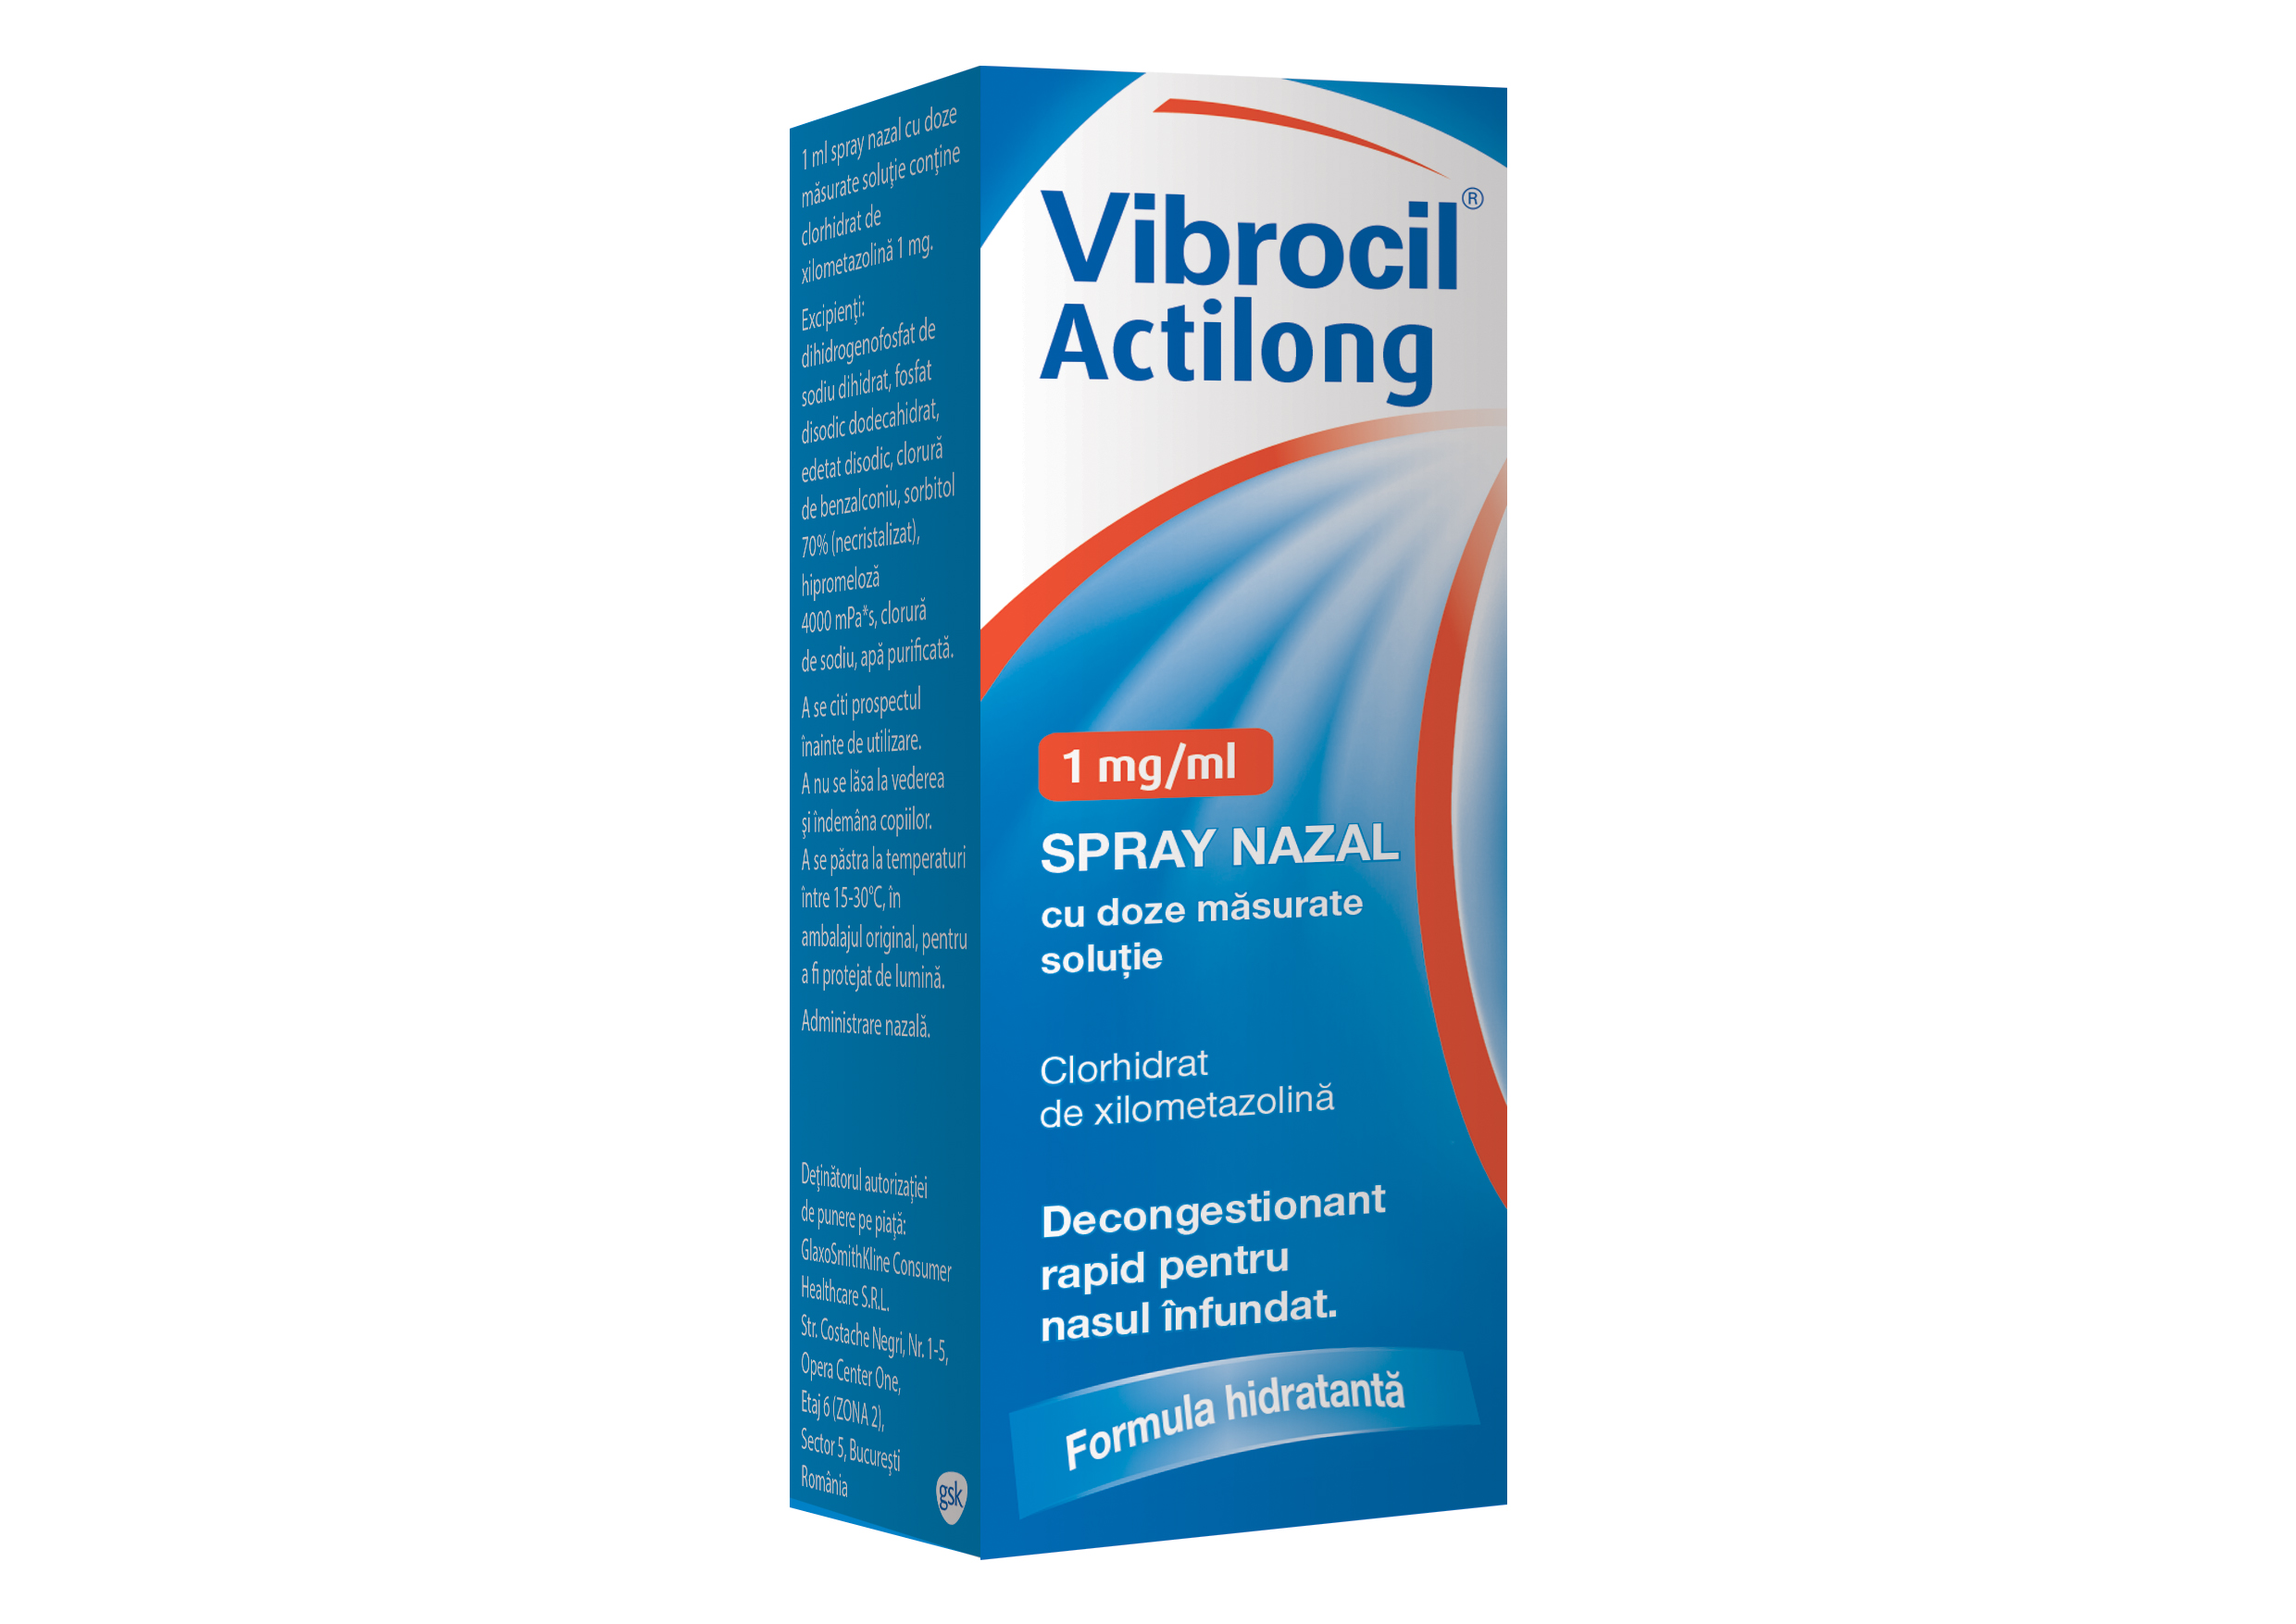 Vibrocil Actilong 1mg/ml spray nazal, 10 ml, Gsk